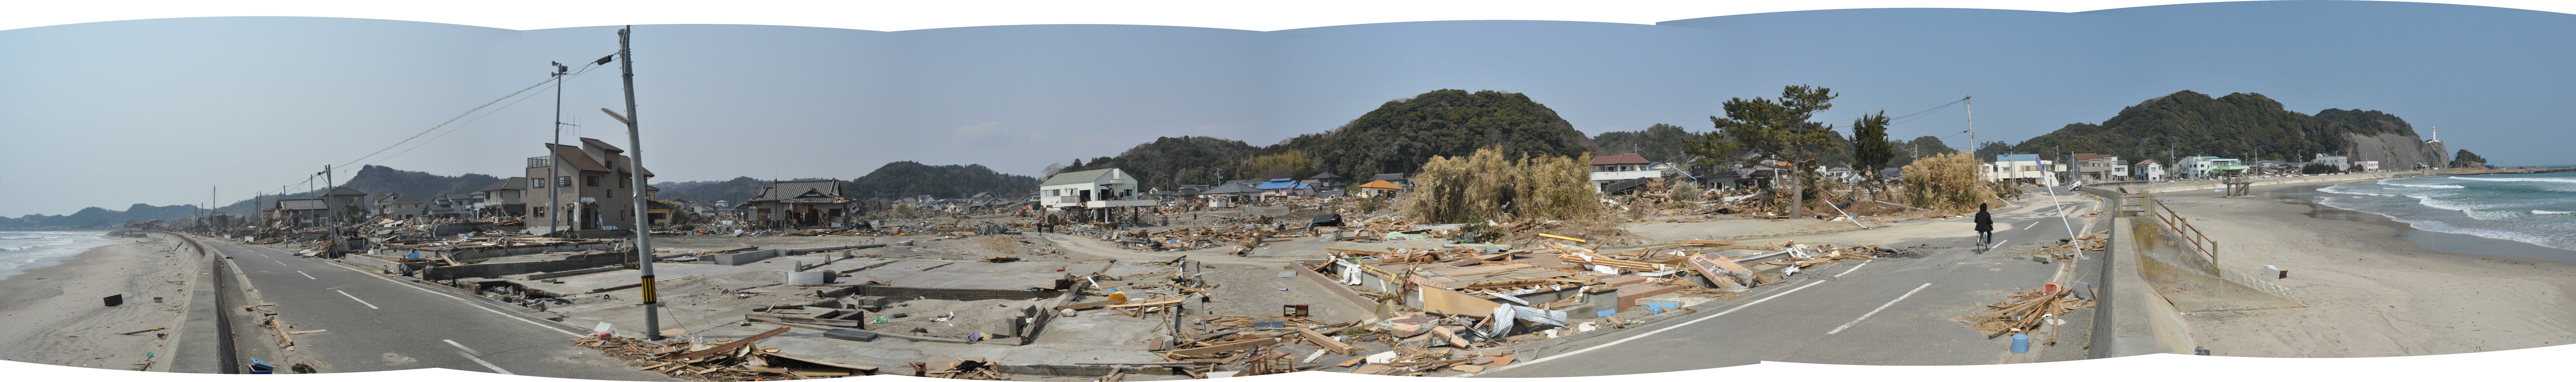 12 大日本大震災によって、県道豊間-四倉線沿いの防潮堤や内側の家屋が被災(平成23年3月30日、丹野稔氏撮影)